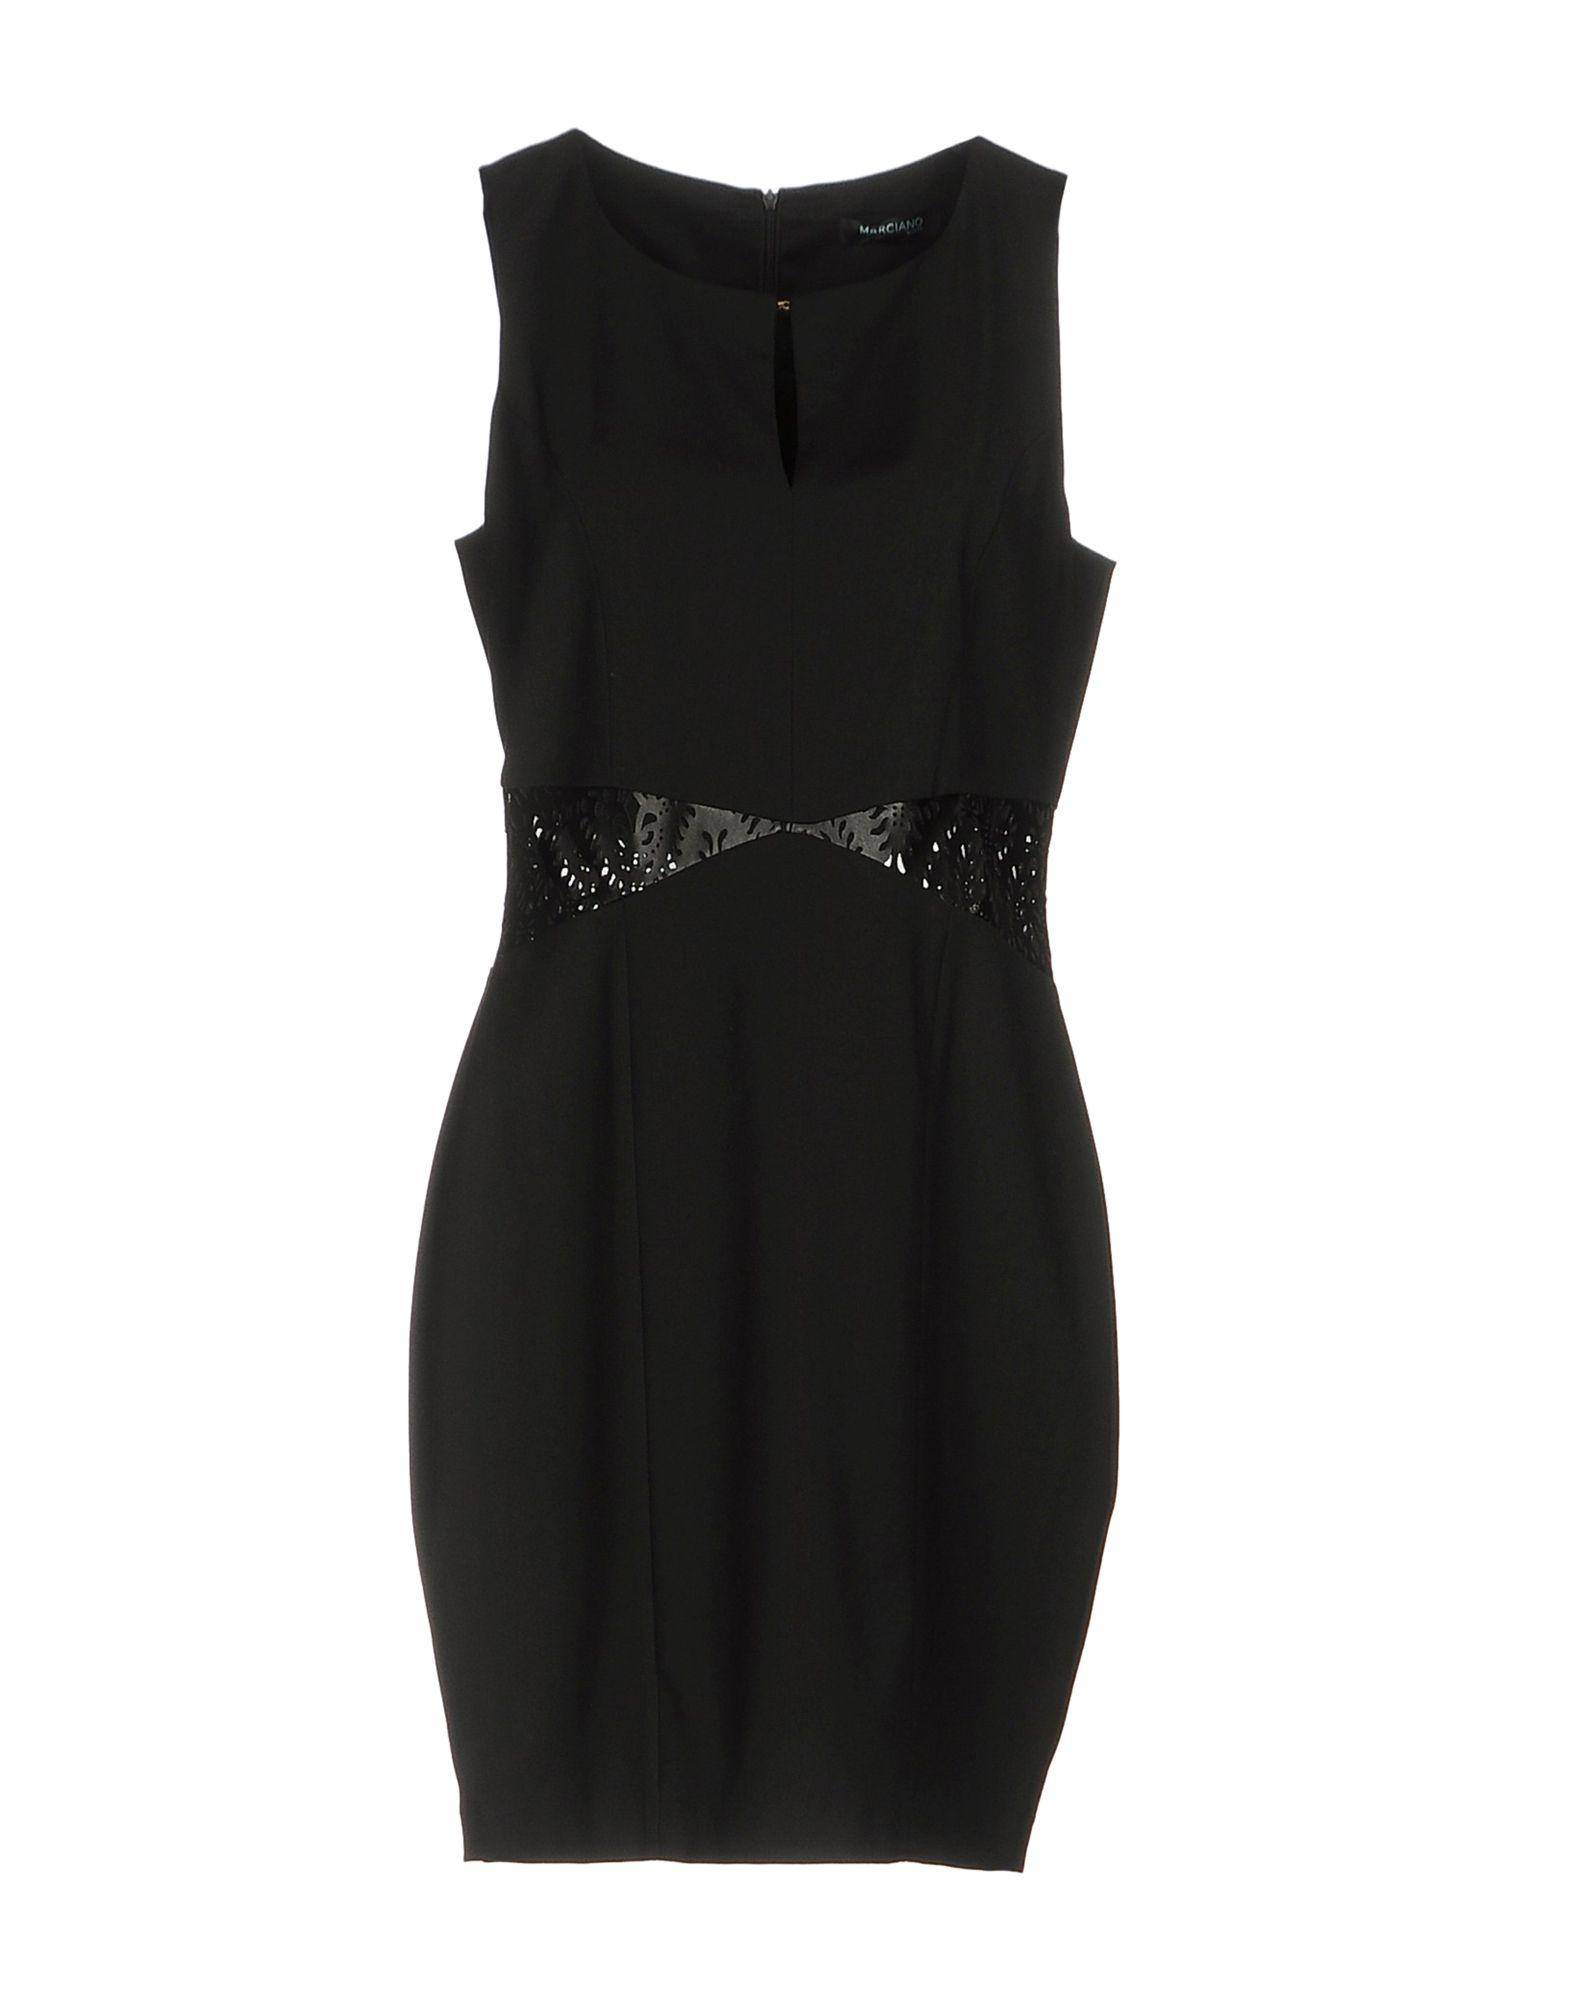 Marciano Short Dress in Black - Lyst